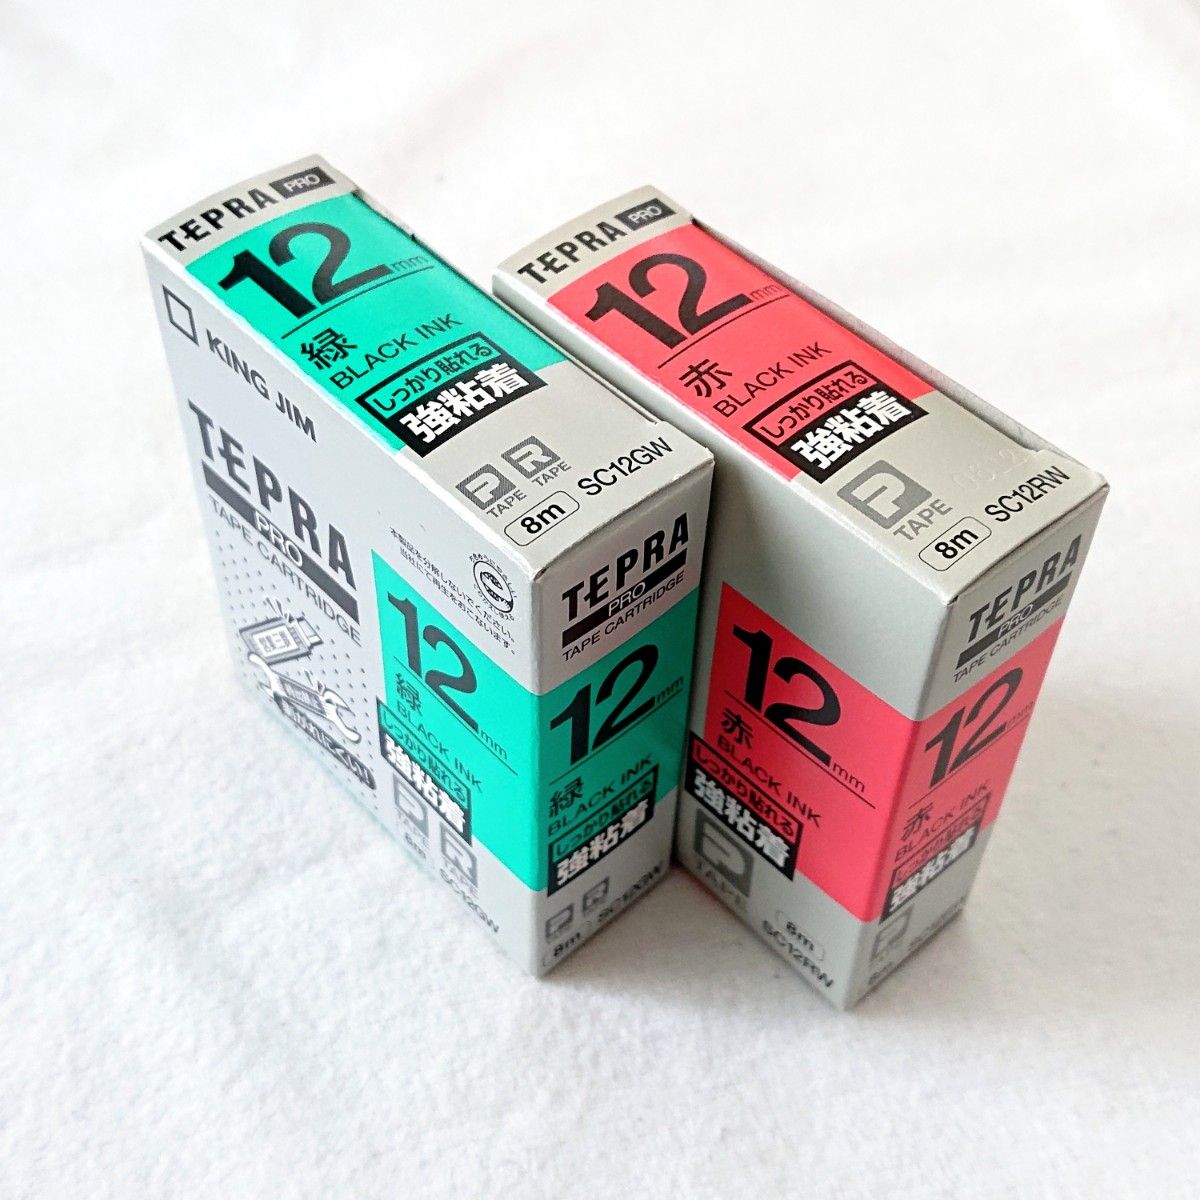 テプラテープ キングジム テプラPRO 純正品 パステル12㎜の緑と赤の【強粘着ラベル】のセット